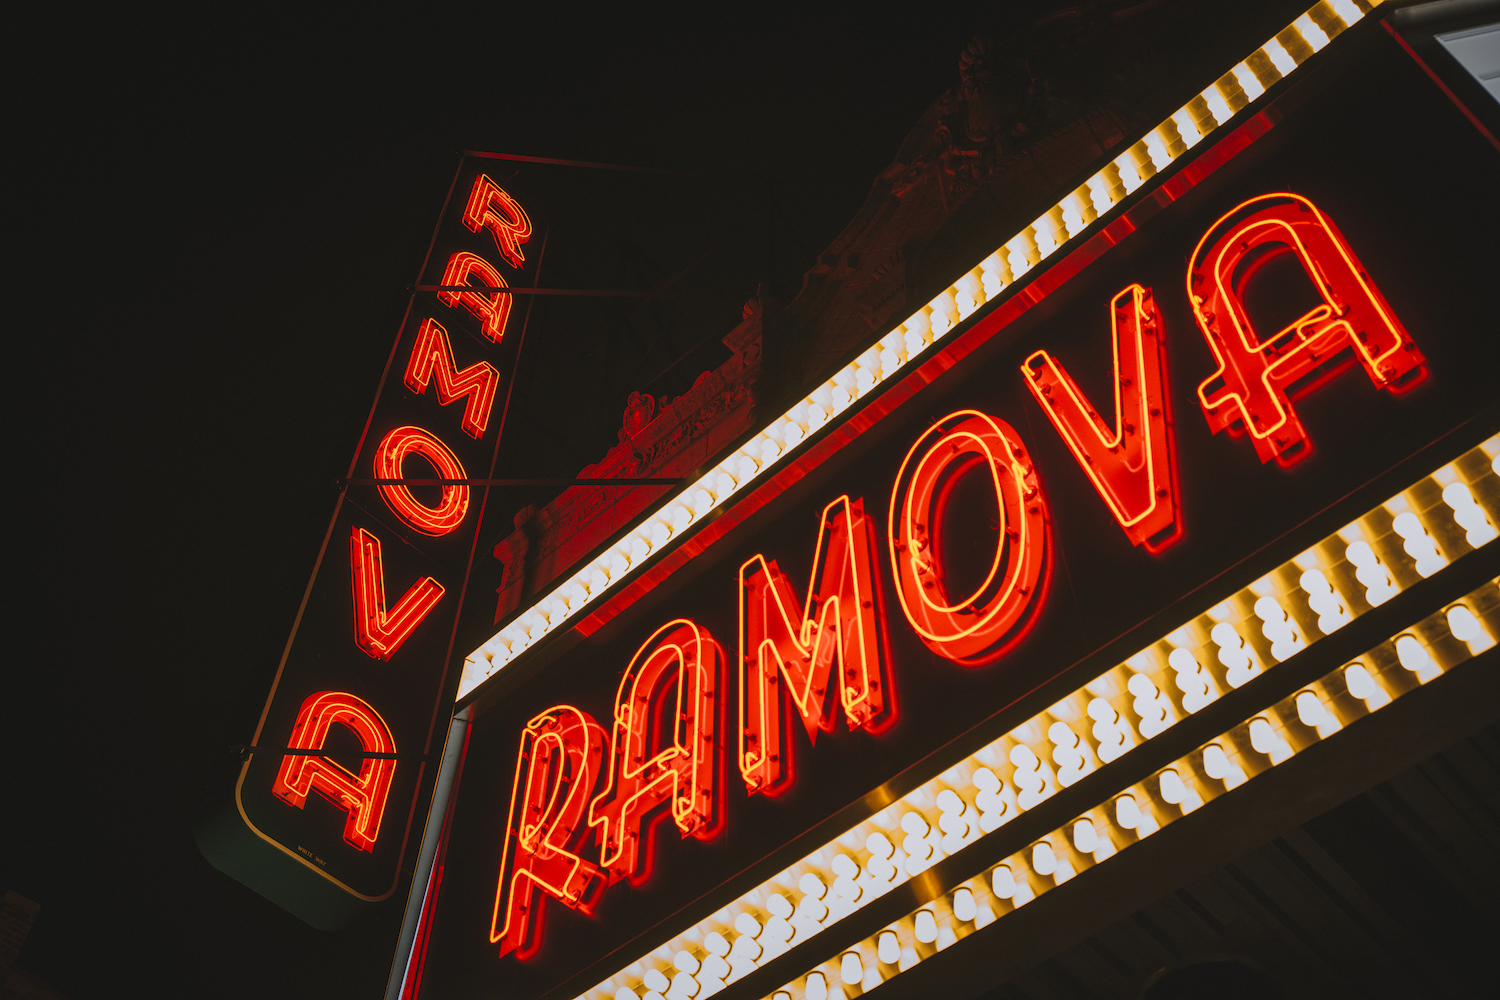 Neon sign for the Ramova theatre